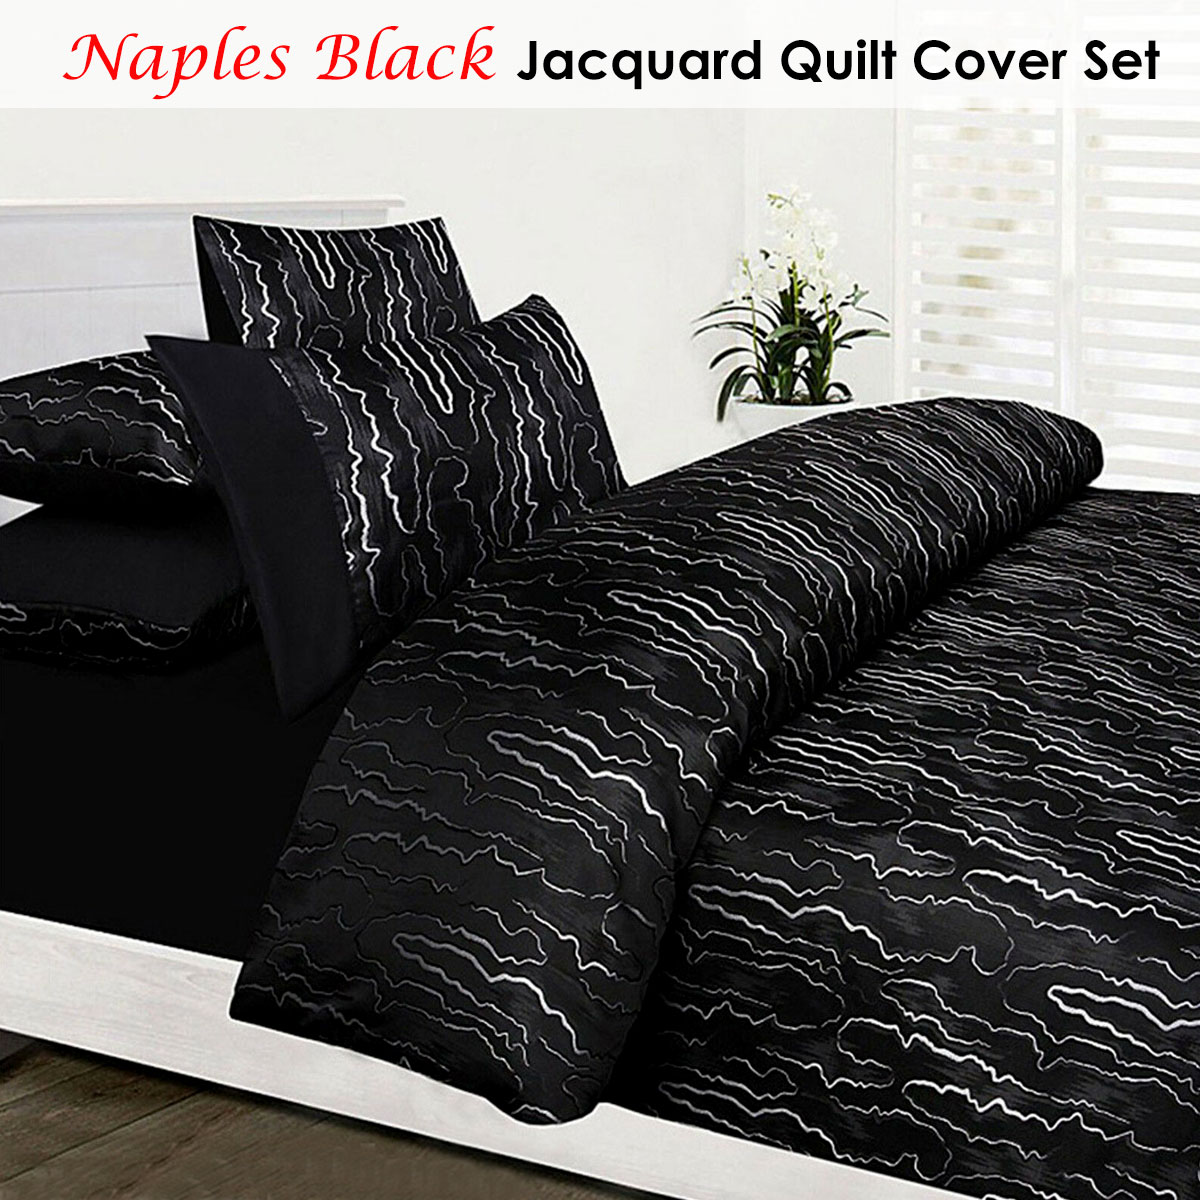 Naples Black Jacquard Quilt Cover Set by Accessorize